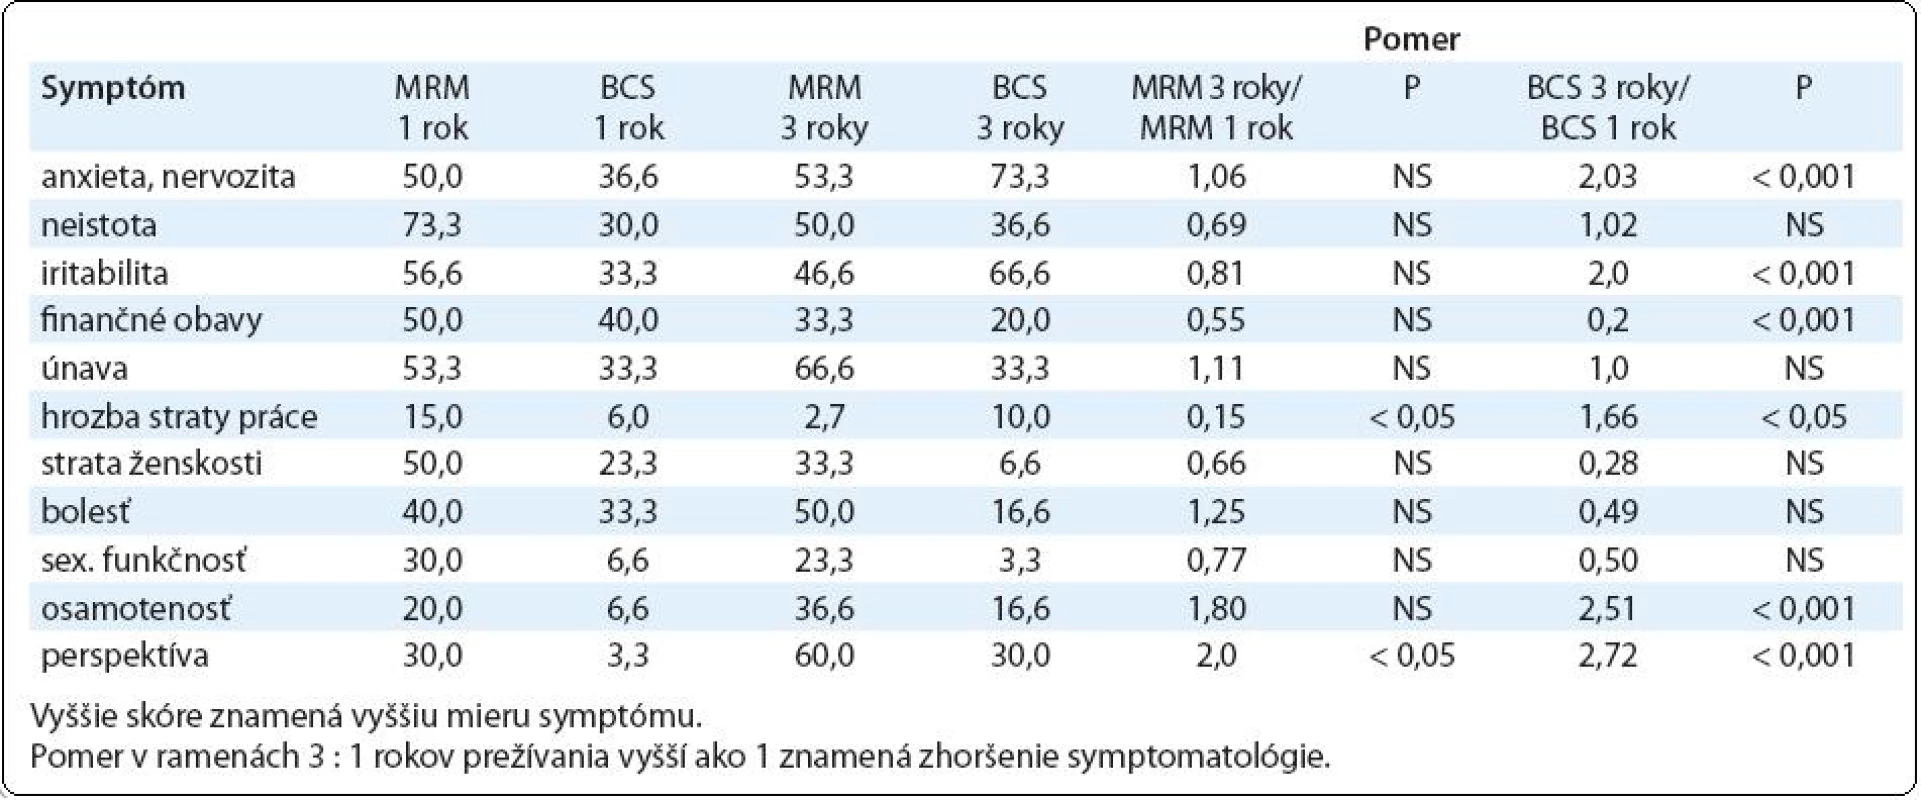 Skóre psychosociálnej dysfunkcie u prežívajúcich pacientok s karcinómom prsníka 1 a 3 roky po MRM vs BCS podľa odpovedí v dotazníku EORTC QLQ-C30.3. (lineárne skóre 1–100)